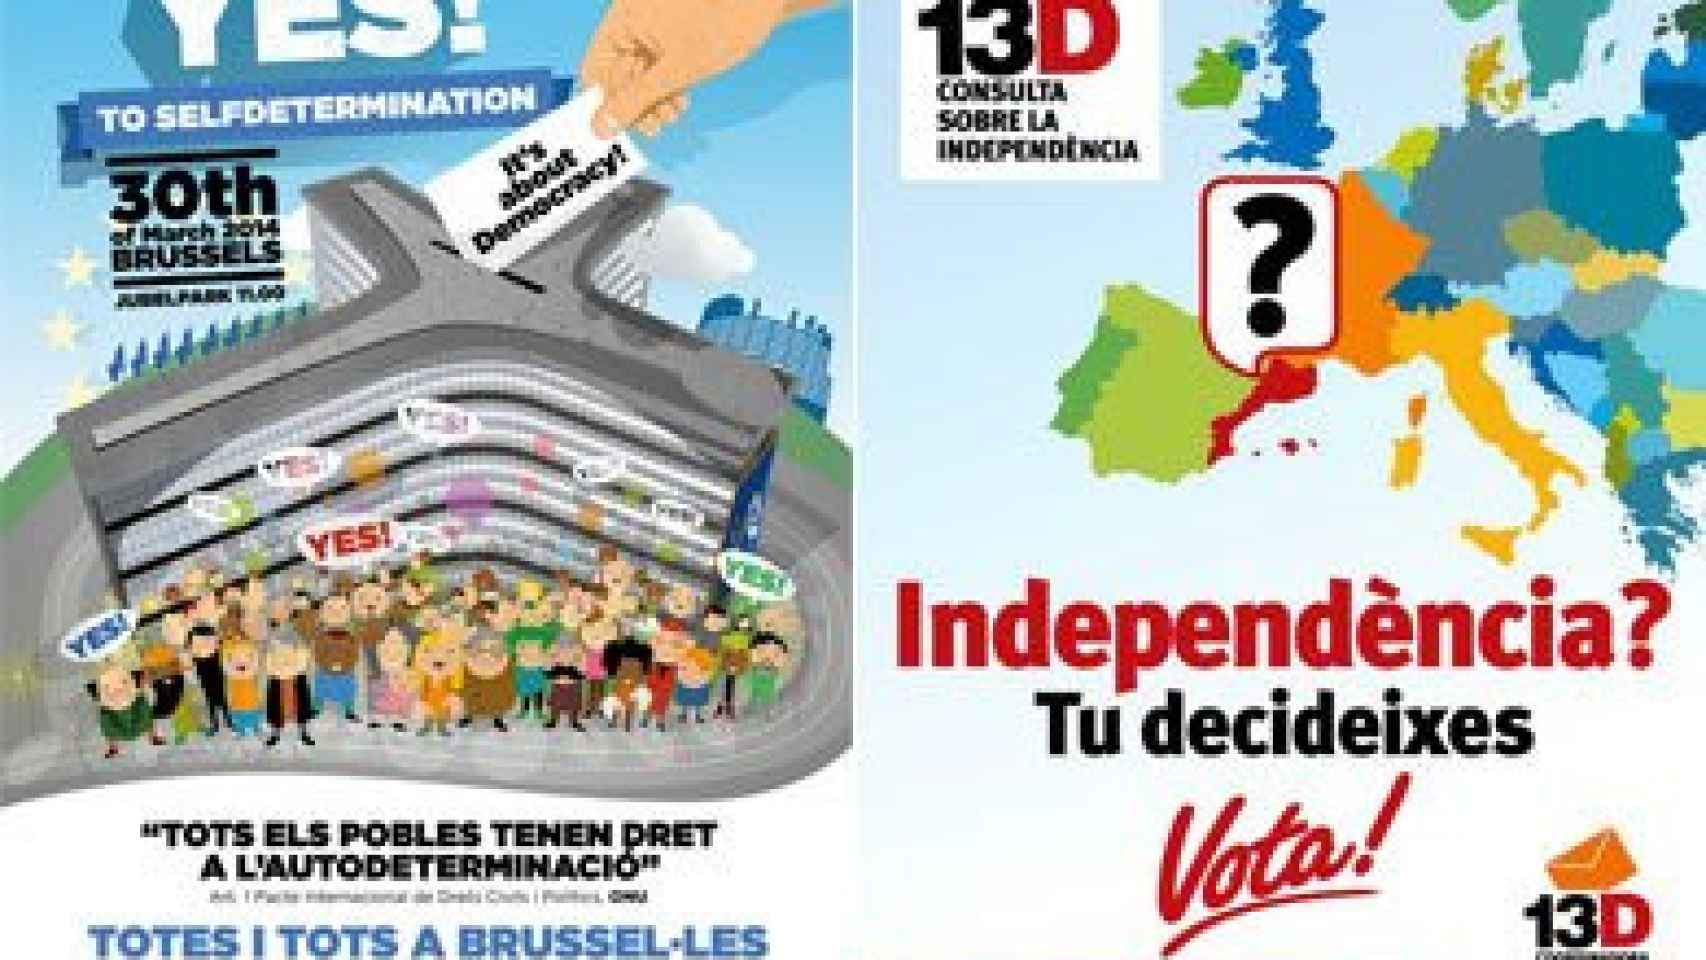 Carteles de la manifestación para la autodeterminación de este domingo y de una las consultas independentistas realizadas en Cataluña entre 2009 y 2011